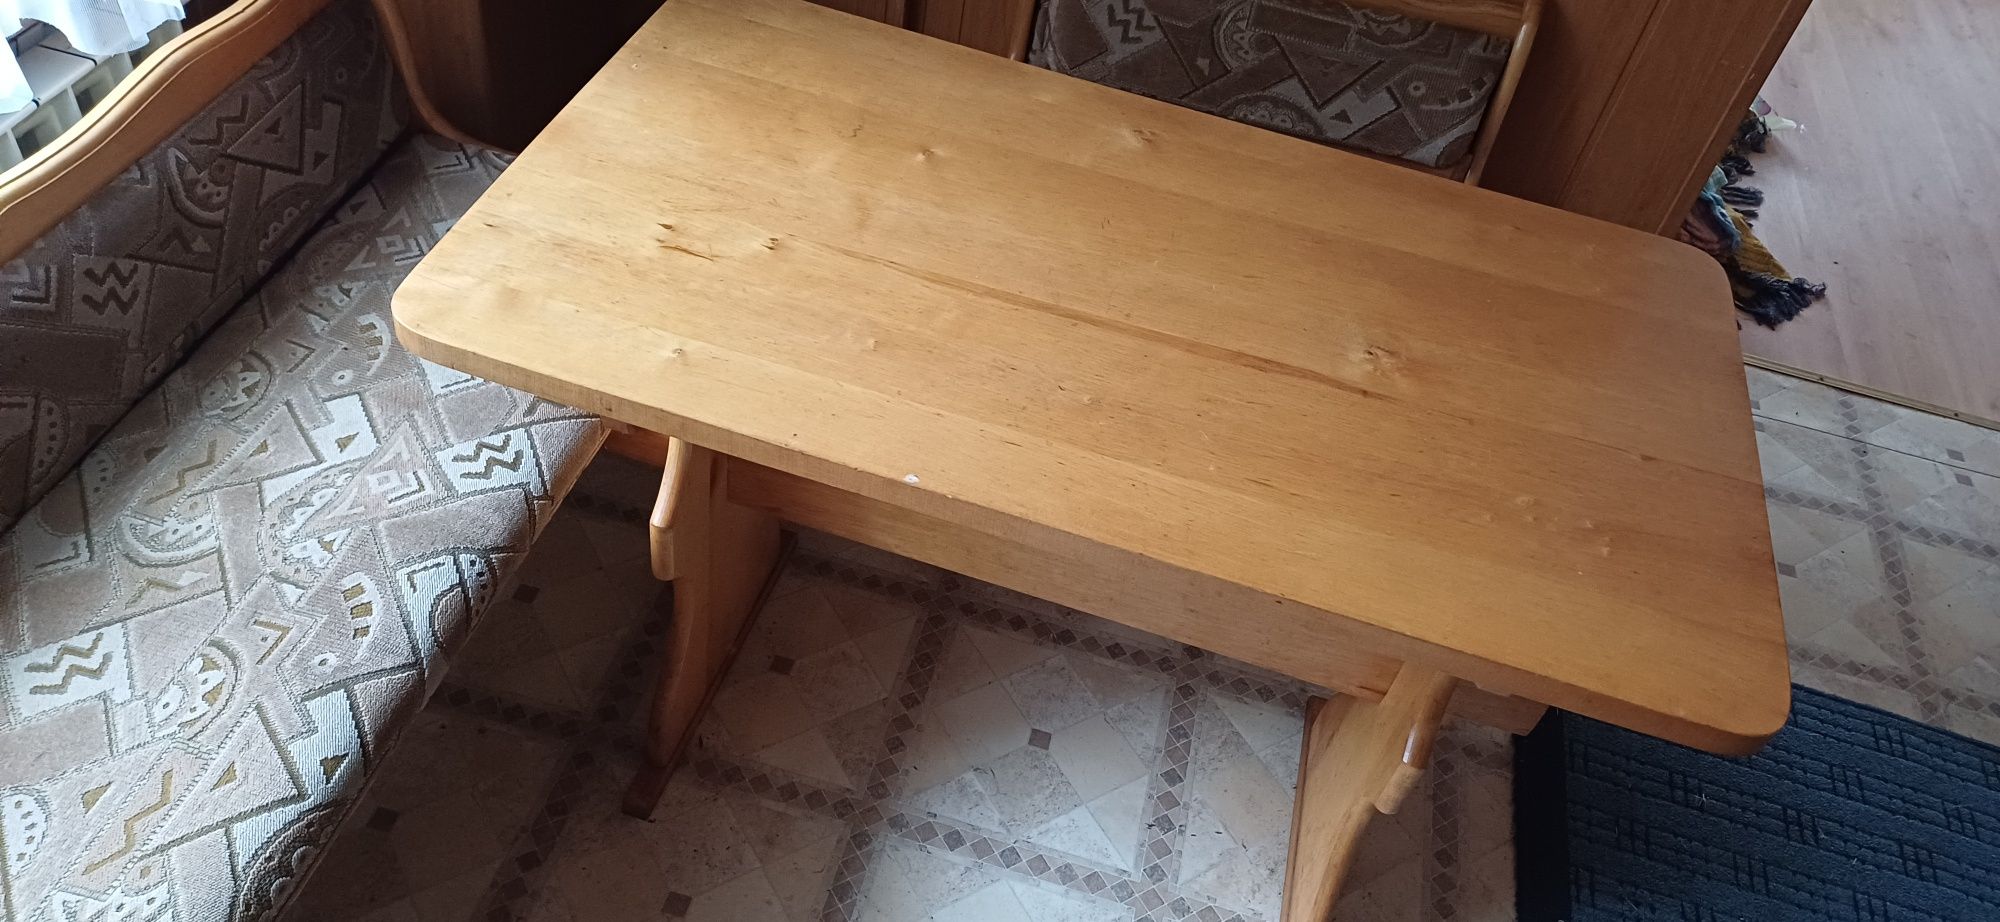 Stół  kuchenny 105cm x60cm x75vm + 2 ławki i 2 stołki